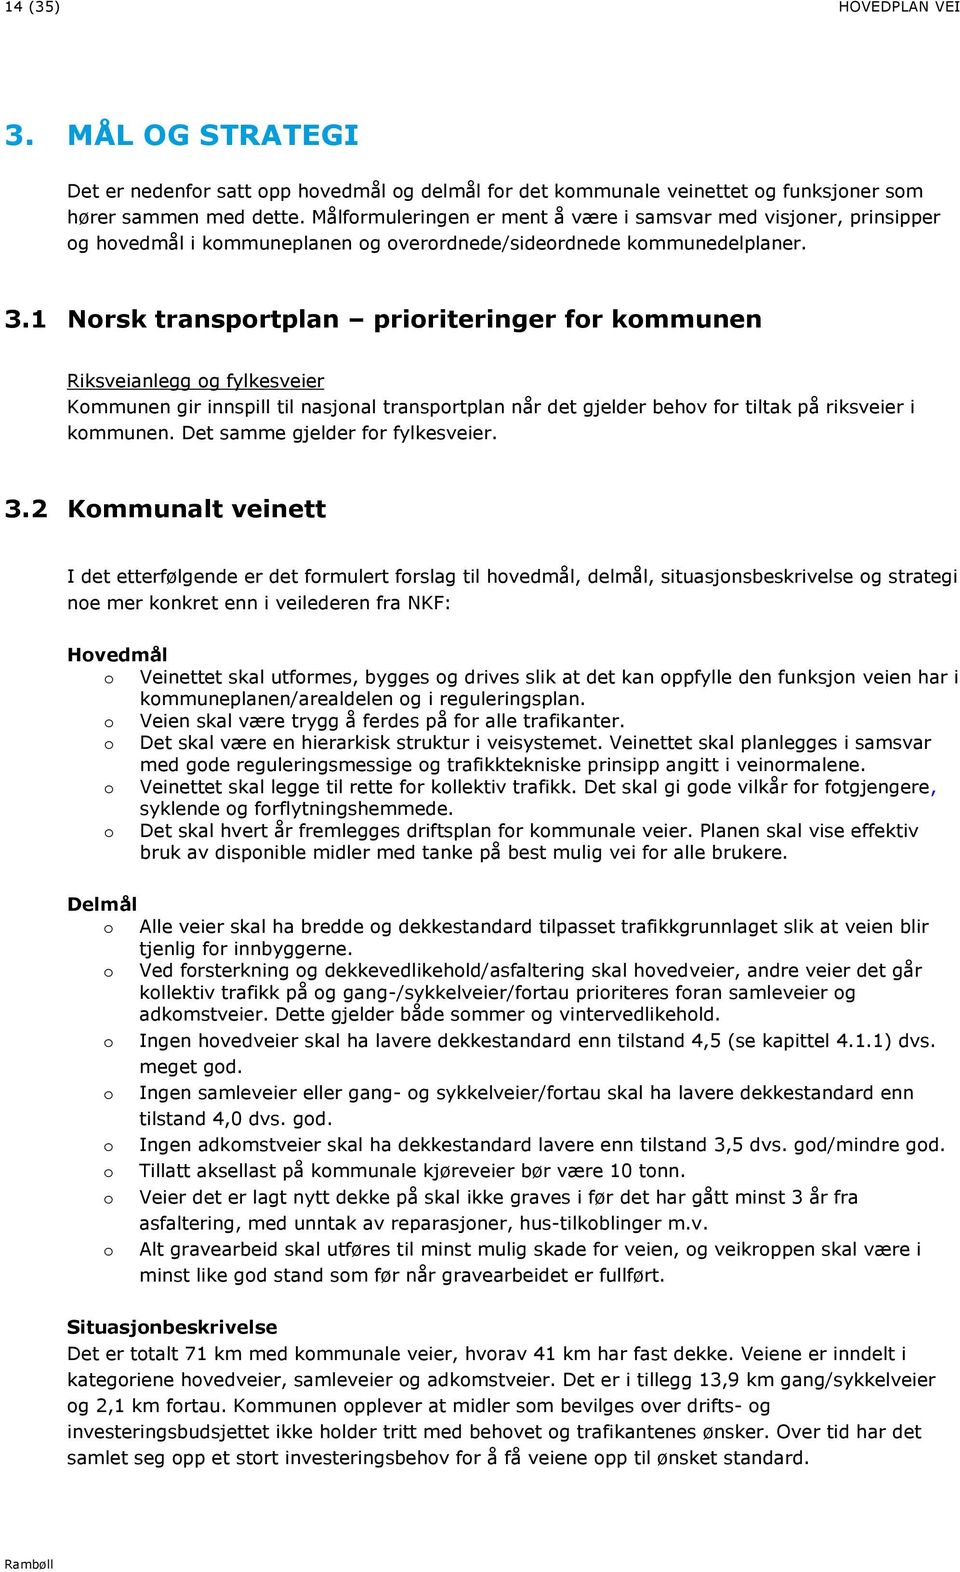 1 Norsk transportplan prioriteringer for kommunen Riksveianlegg og fylkesveier Kommunen gir innspill til nasjonal transportplan når det gjelder behov for tiltak på riksveier i kommunen.